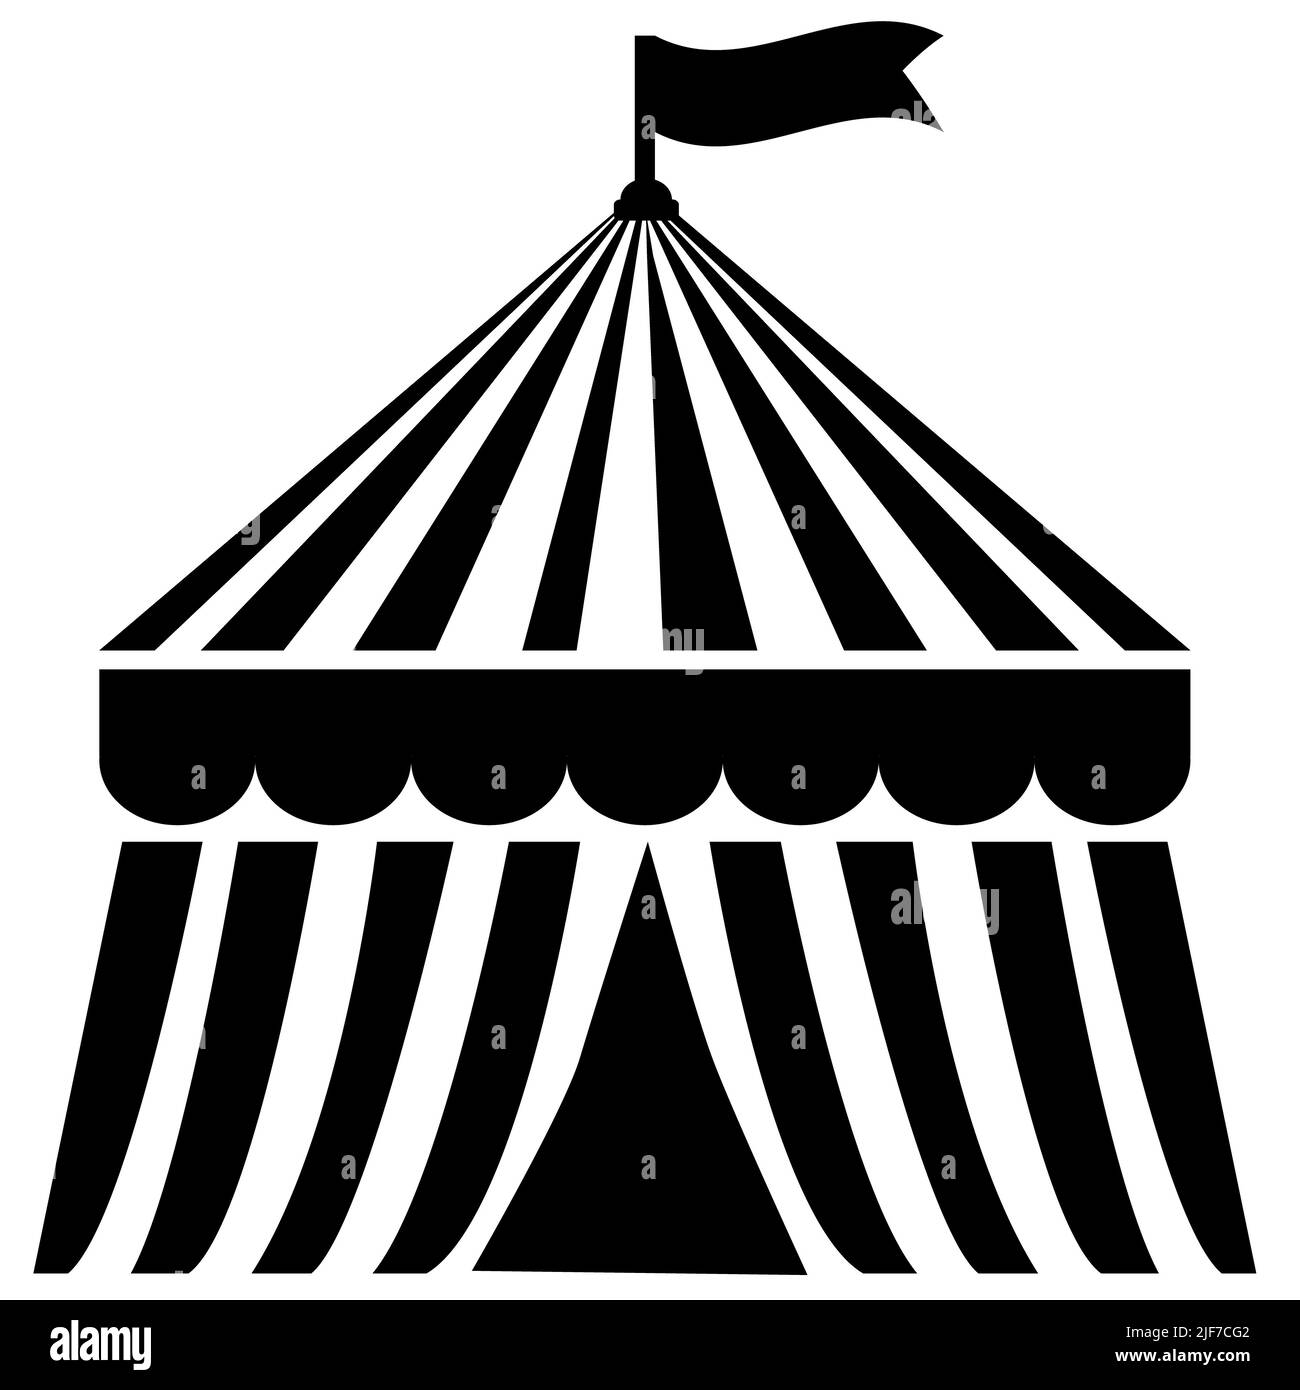 zirkuszelt-Festival-Ikone auf weißem Hintergrund. zirkushütte-Markisenschild. Modernes Zirkuszelt-Symbol. Flacher Stil. Stockfoto